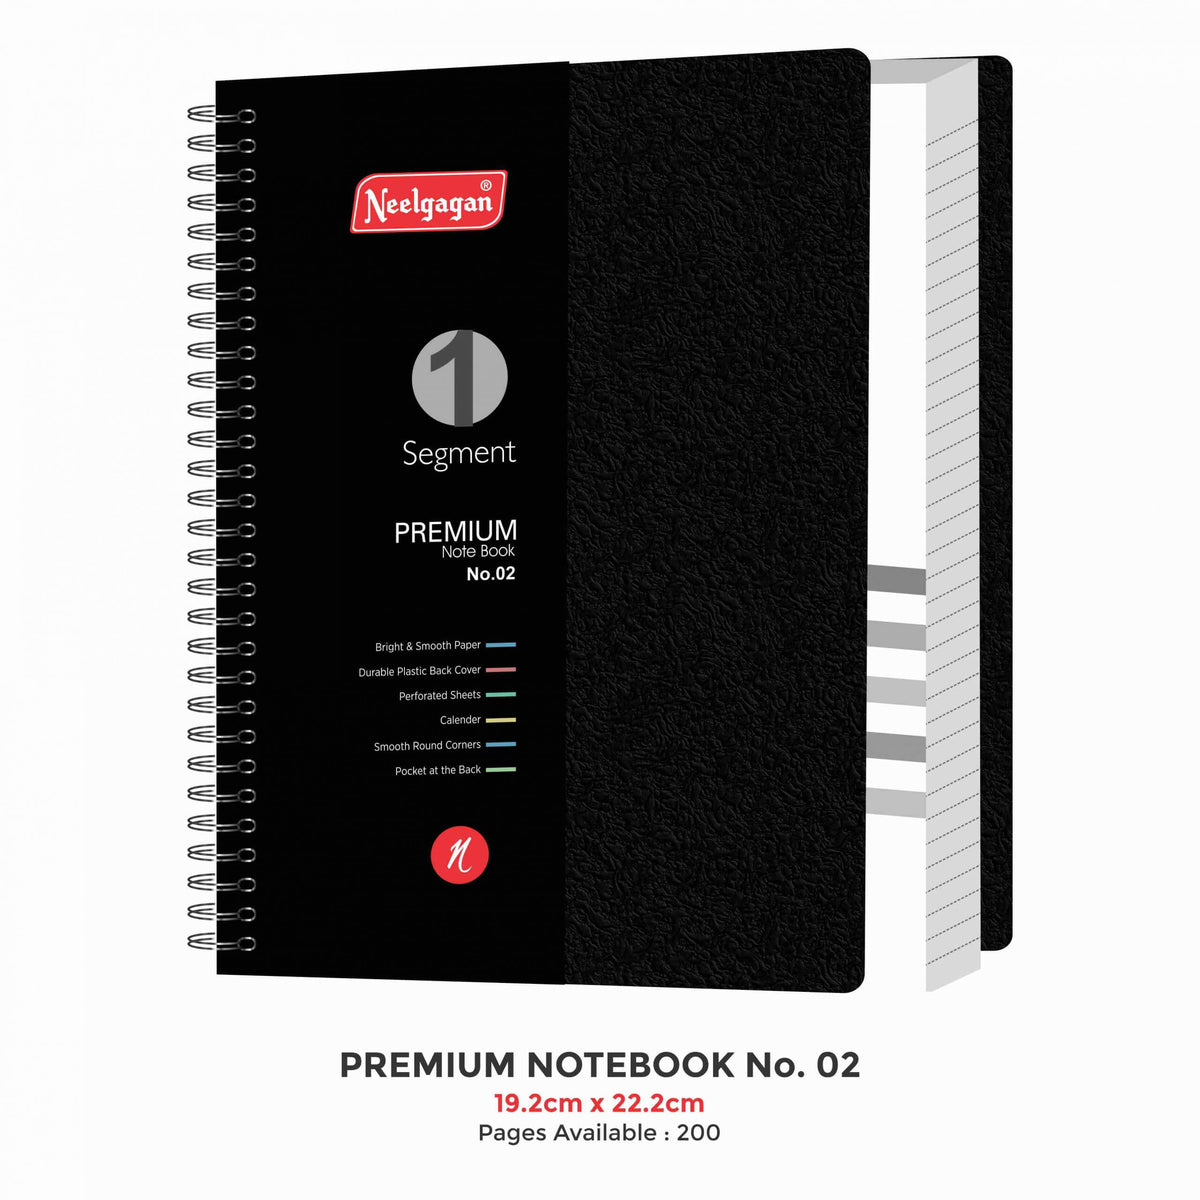 Premium Notebook No.02, 160 Pages, (19.2cm x 22.2cm)